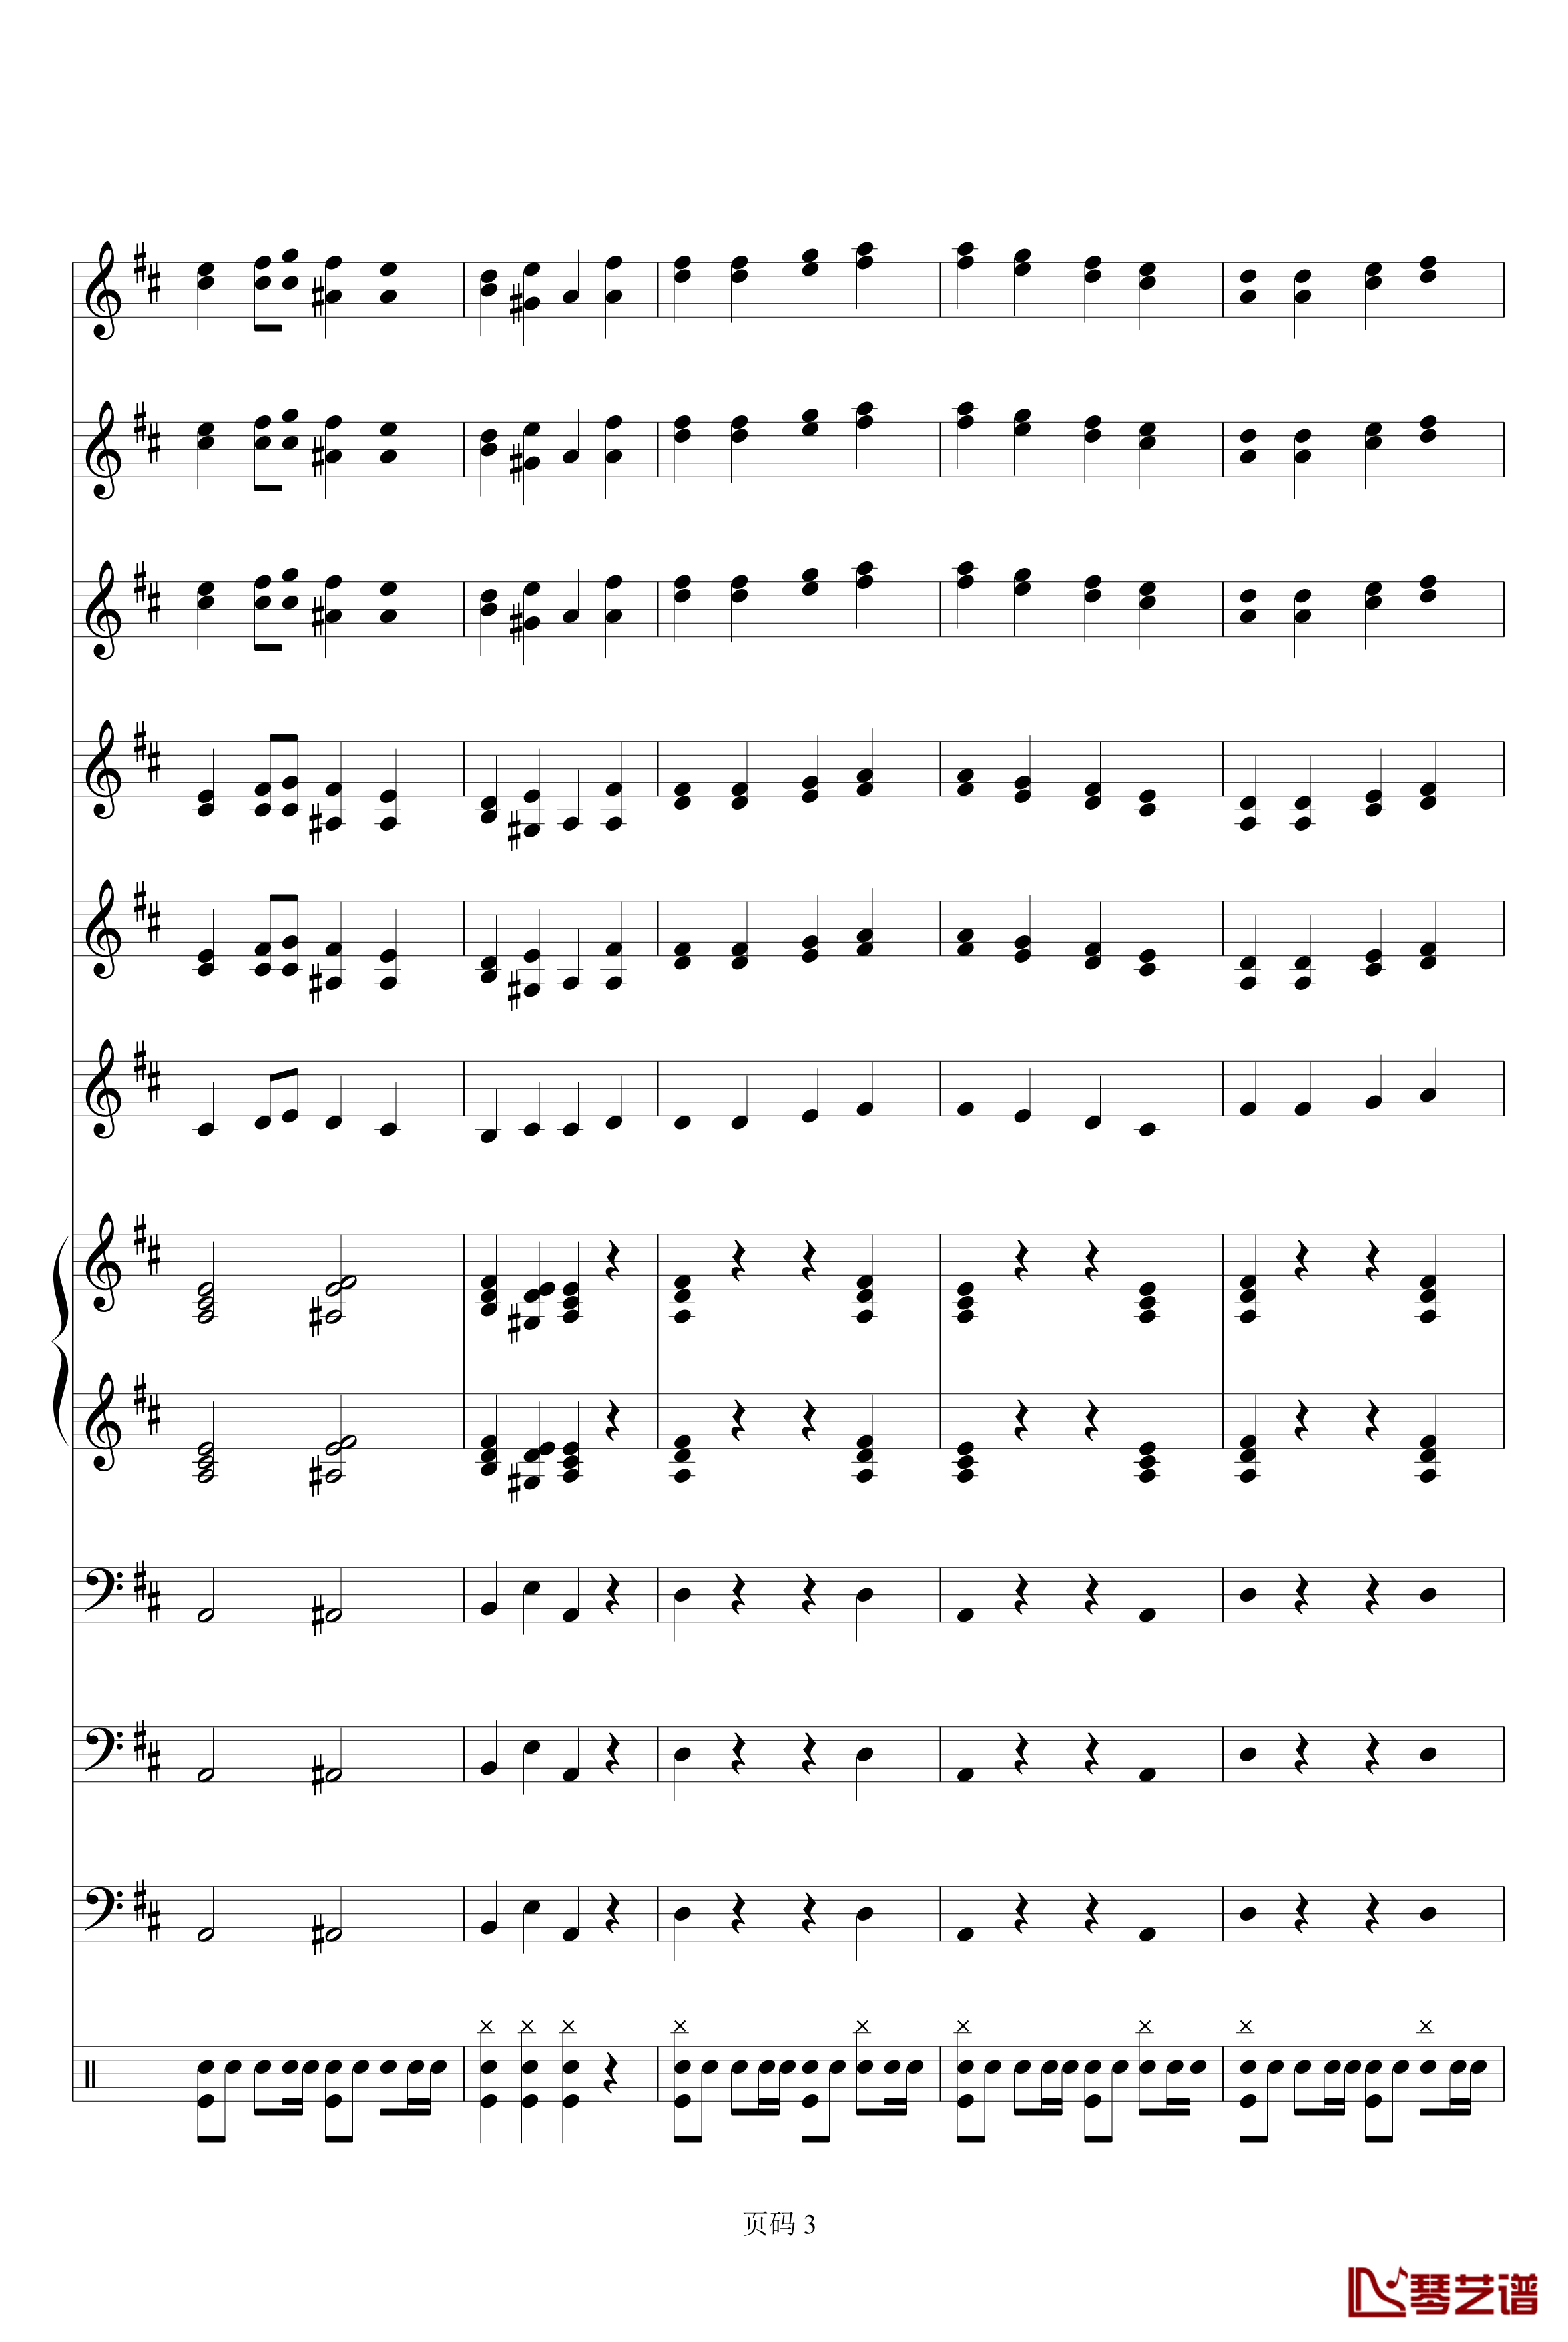 欢乐颂电子琴合奏钢琴谱-贝多芬-beethoven3